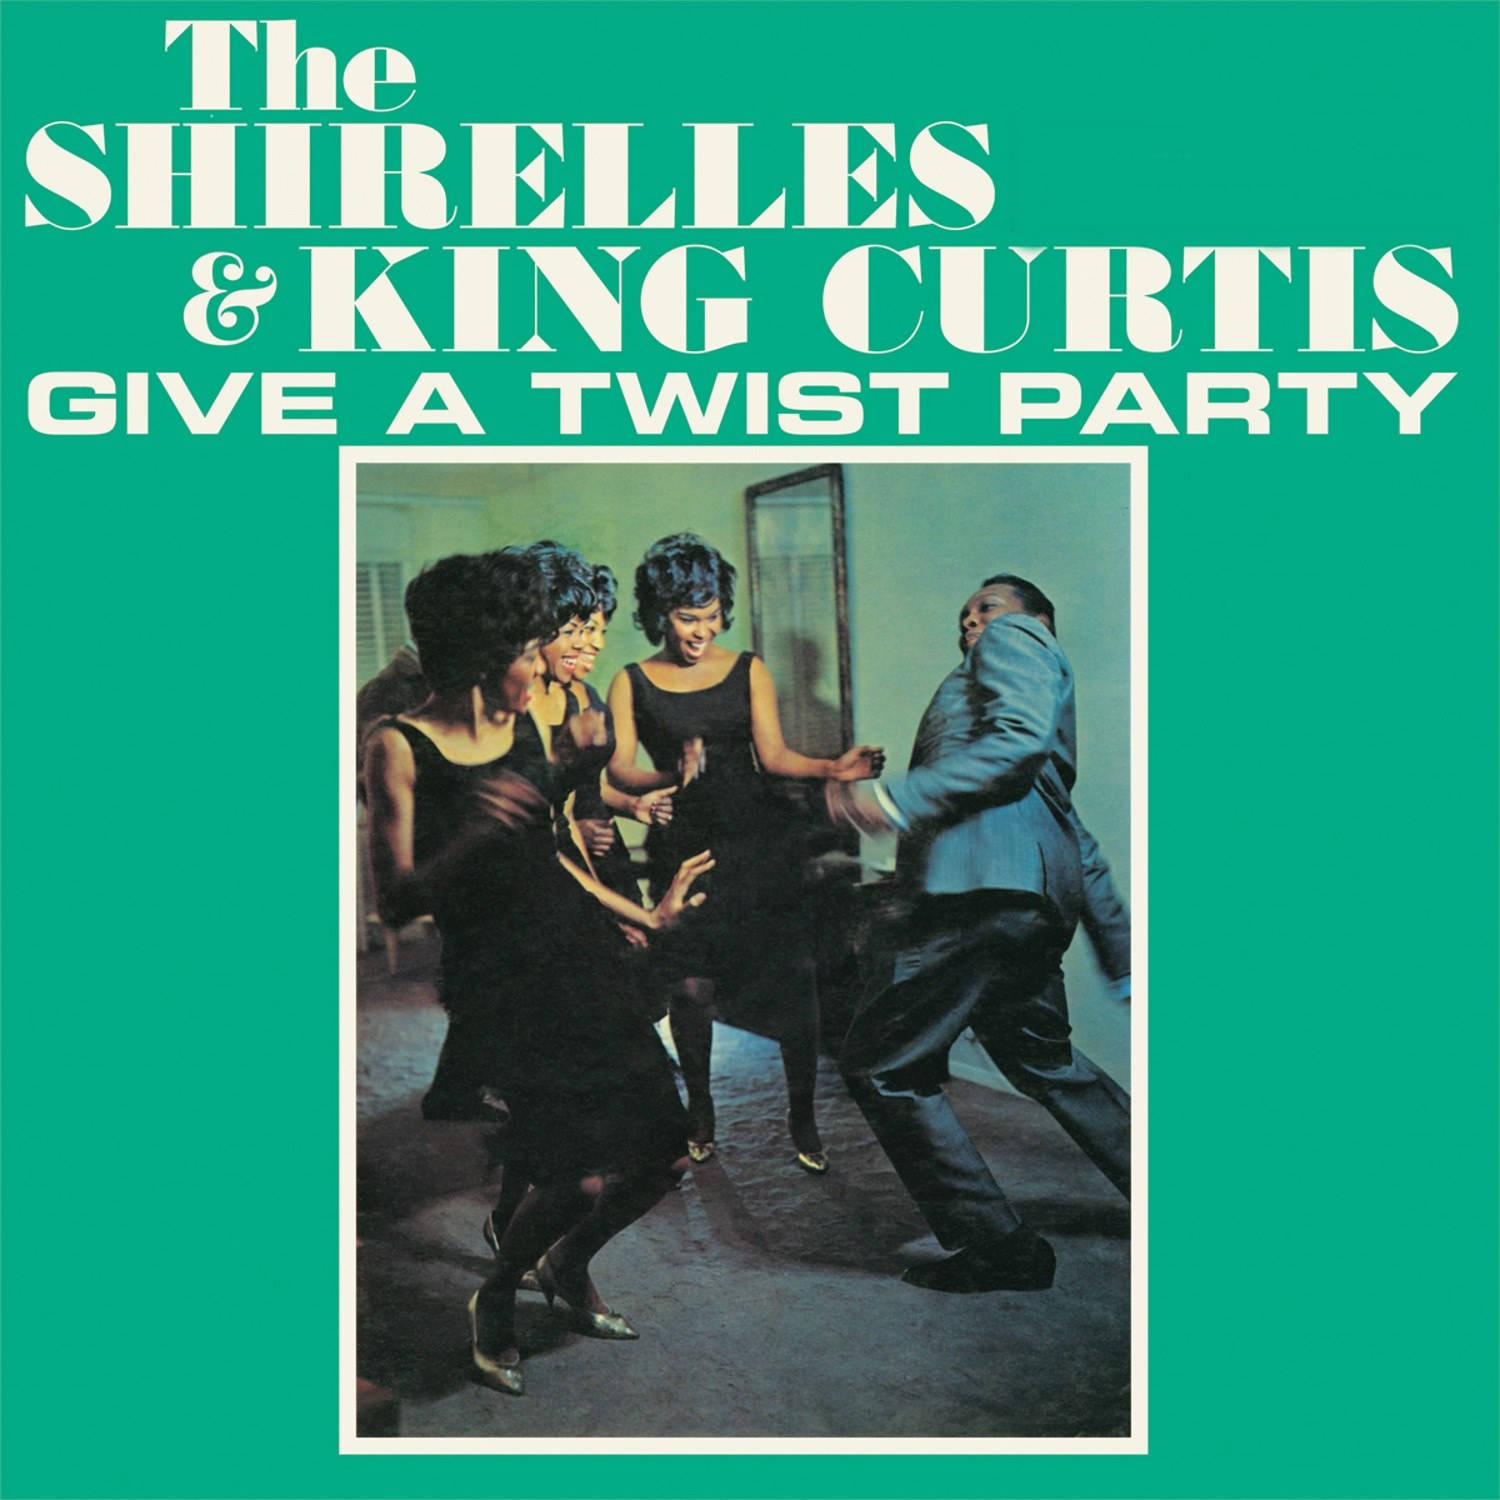 Kingcurtis Und Das Albumcover Der Shirelles Wallpaper